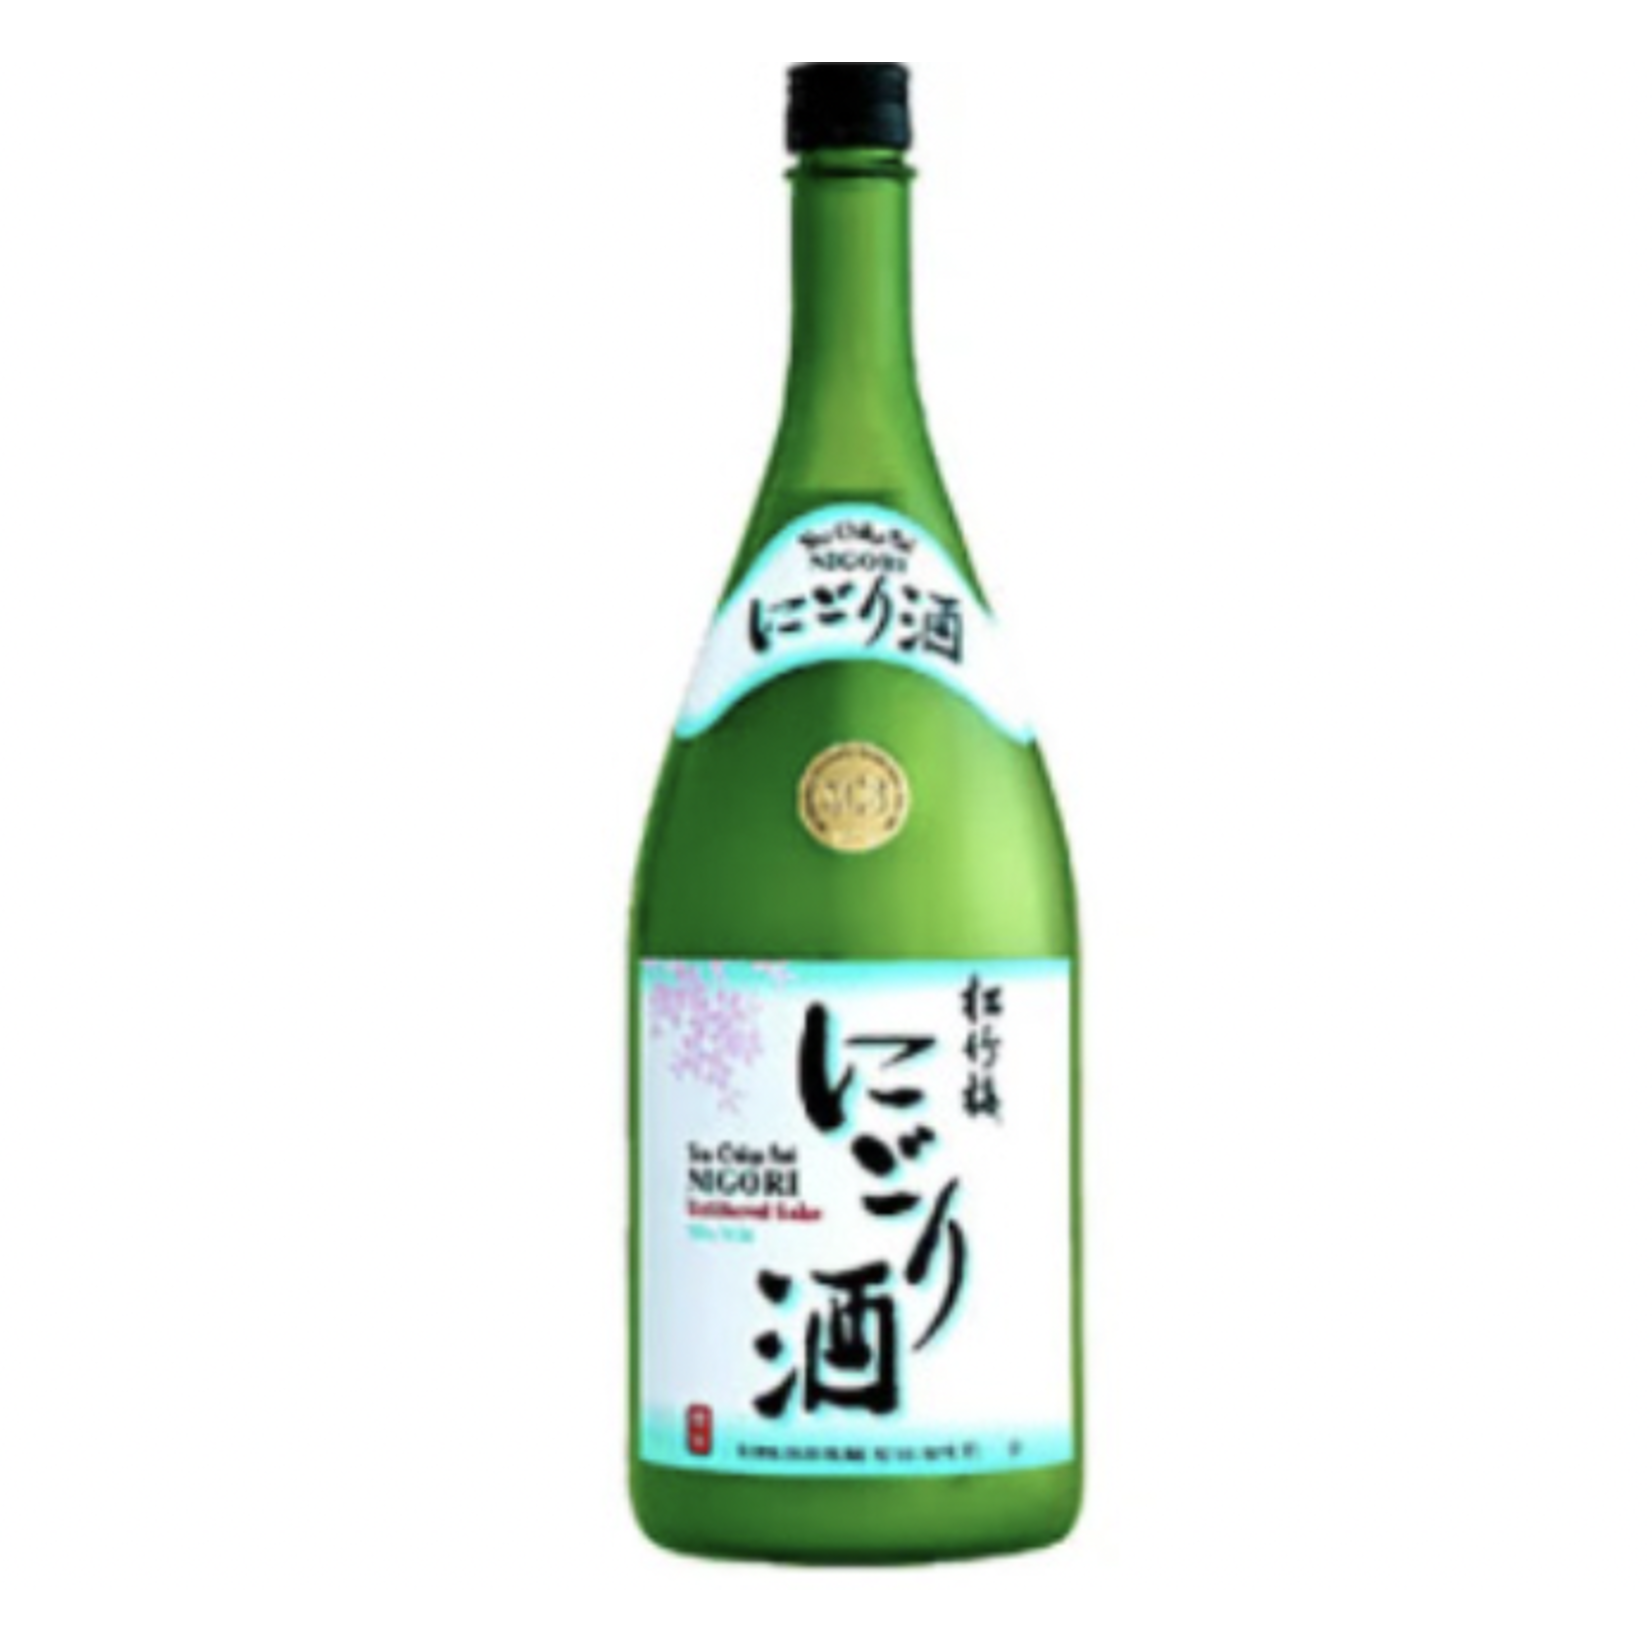 Sake Sho Chiku Bai Nigori Sake 375ml